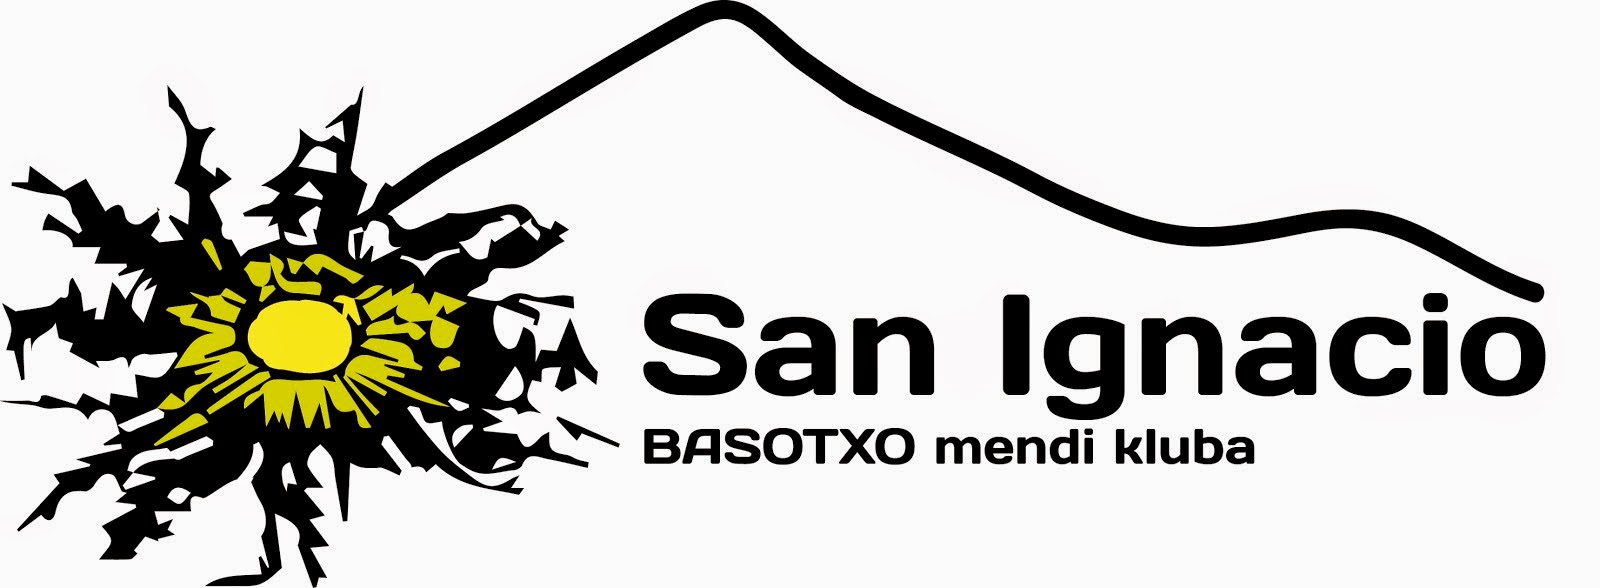 Club de Monte San Ignacio Basotxo Mendi Kluba;